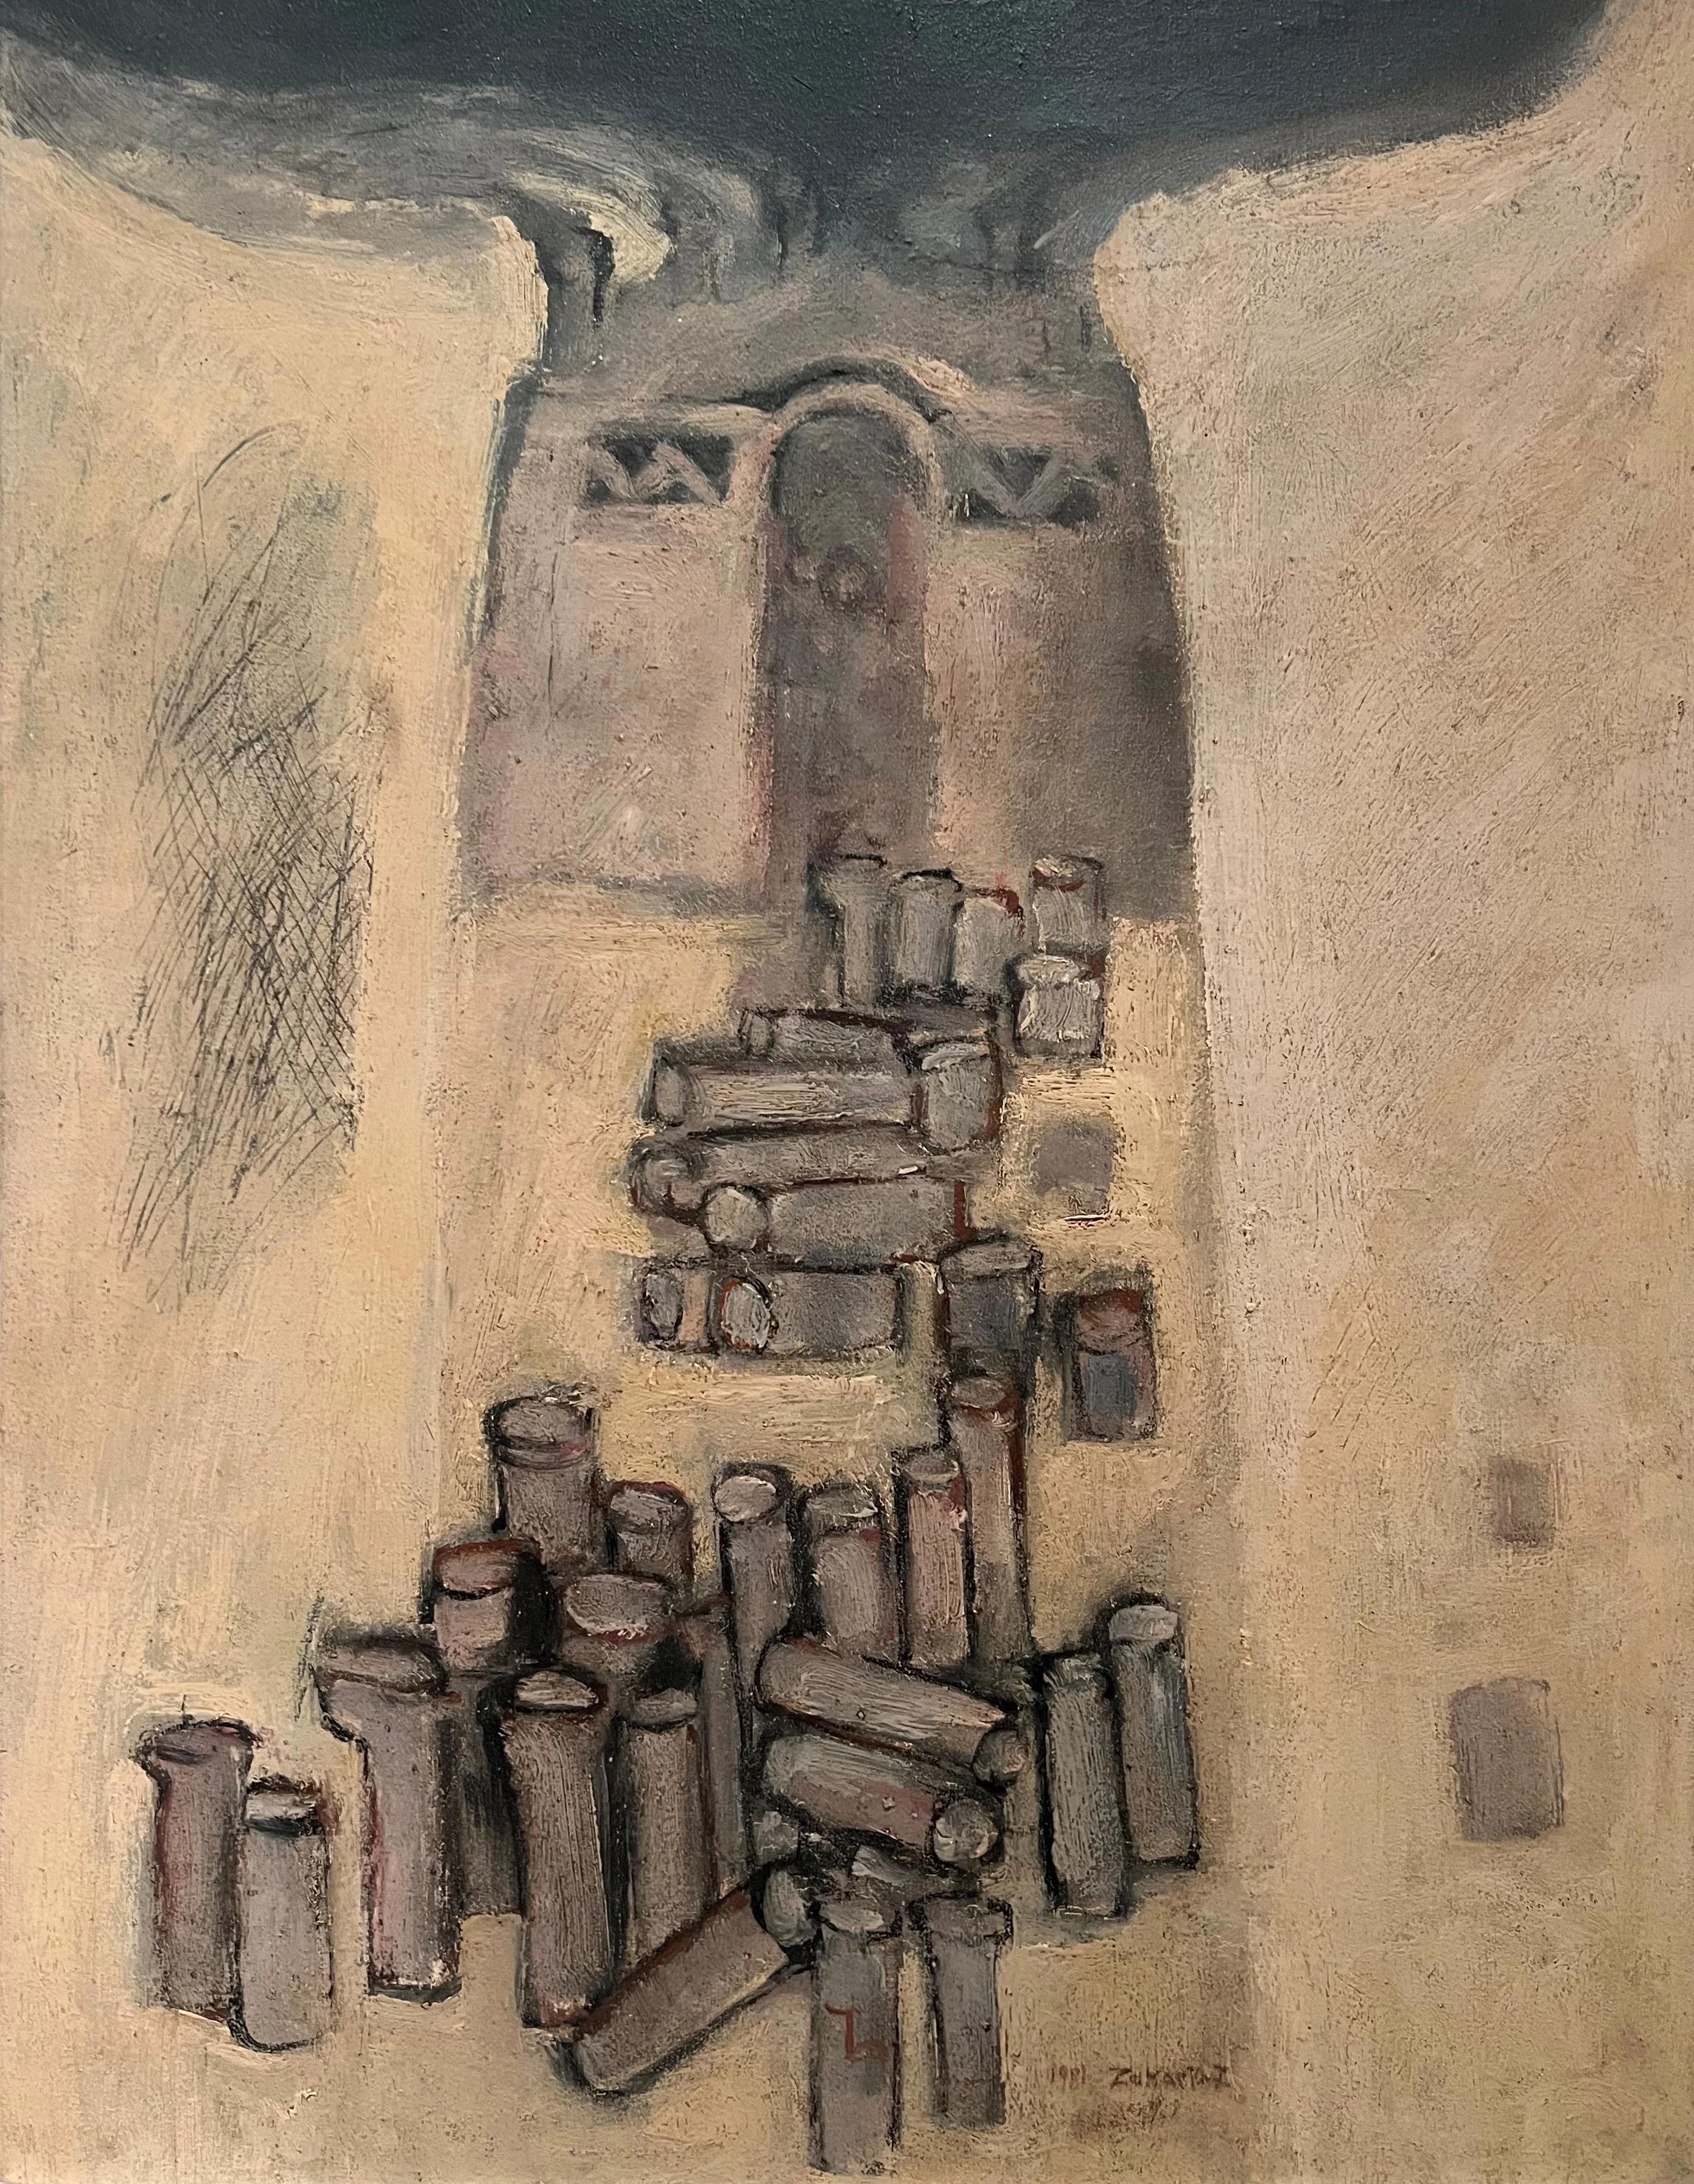 Abstraktes Ölgemälde „Kiln“ 26" x 20" Zoll (1981) von Zaccaria Zeini

Medium: Öl auf Leinwand 
Unterzeichnet und datiert 

Zaccaria El Zeini (1932-1993) wuchs im beliebten Viertel Sayyida Zienab in der Altstadt von Kairo auf und absolvierte die